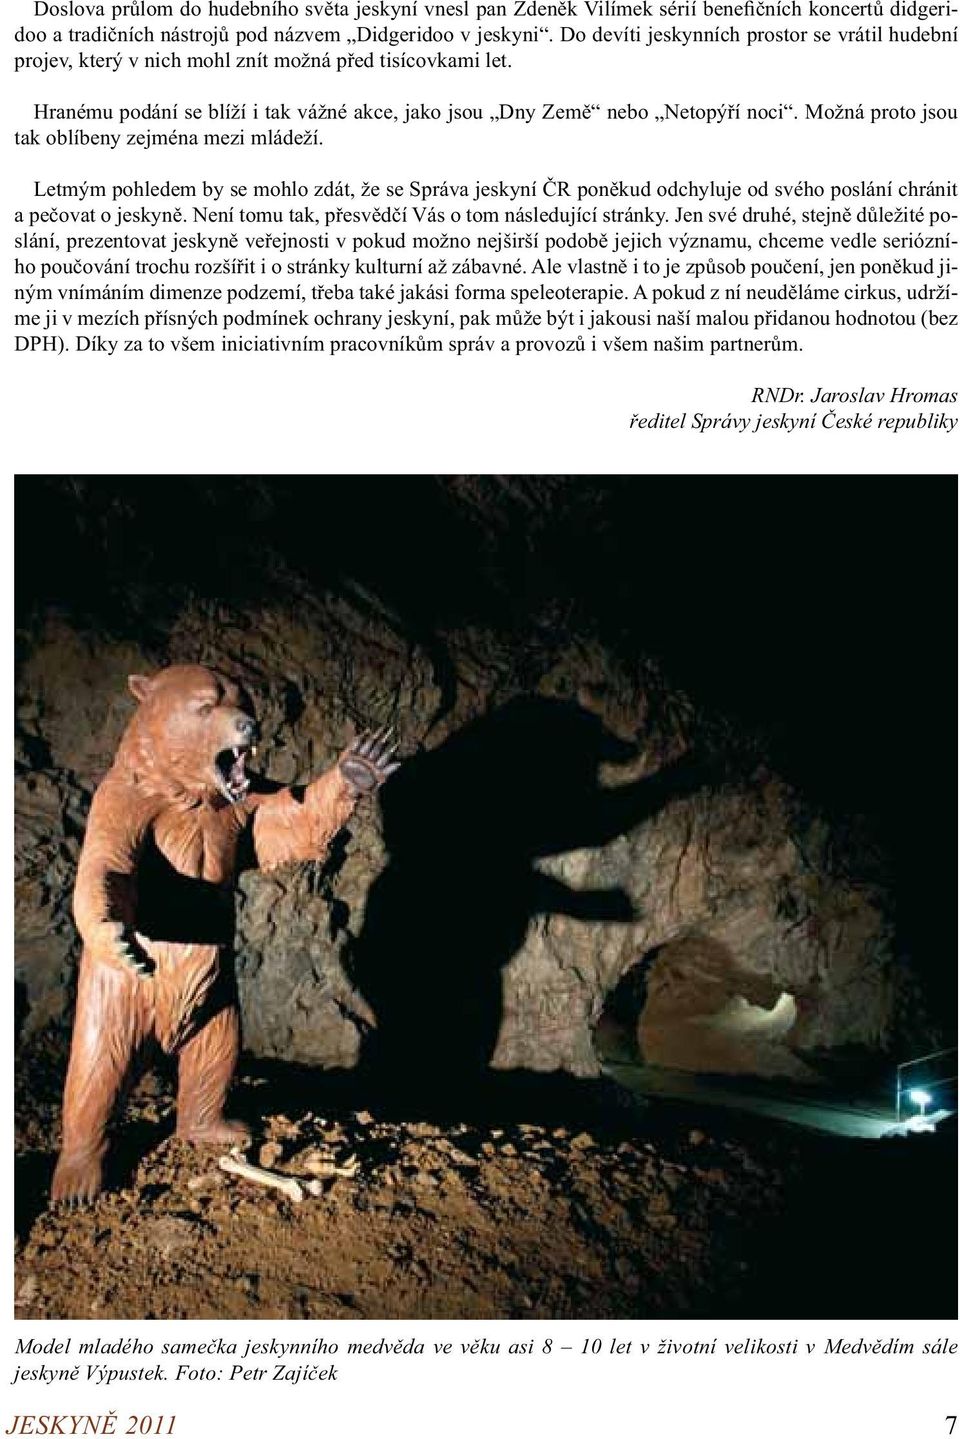 Možná proto jsou tak oblíbeny zejména mezi mládeží. Letmým pohledem by se mohlo zdát, že se Správa jeskyní ČR poněkud odchyluje od svého poslání chránit a pečovat o jeskyně.